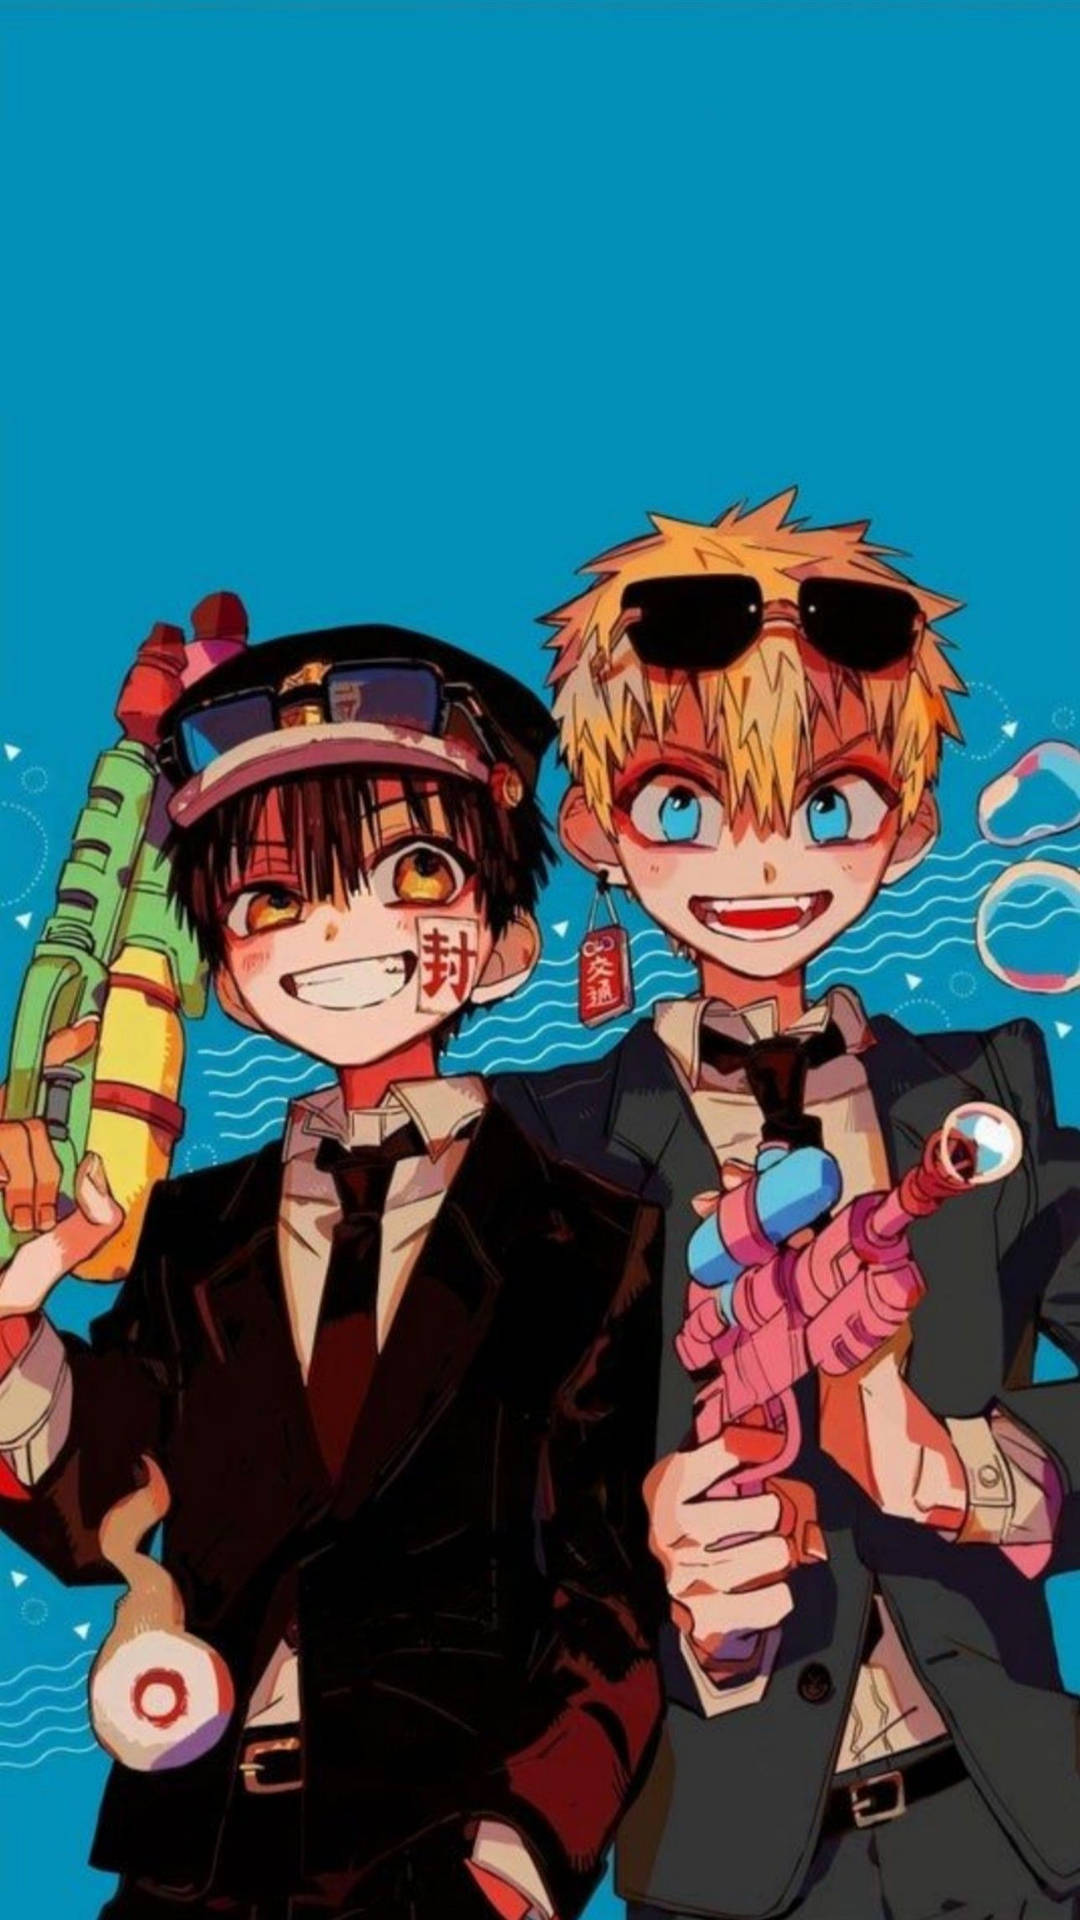 Doisrapazes De Anime Segurando Armas E Um Fundo Azul. Papel de Parede